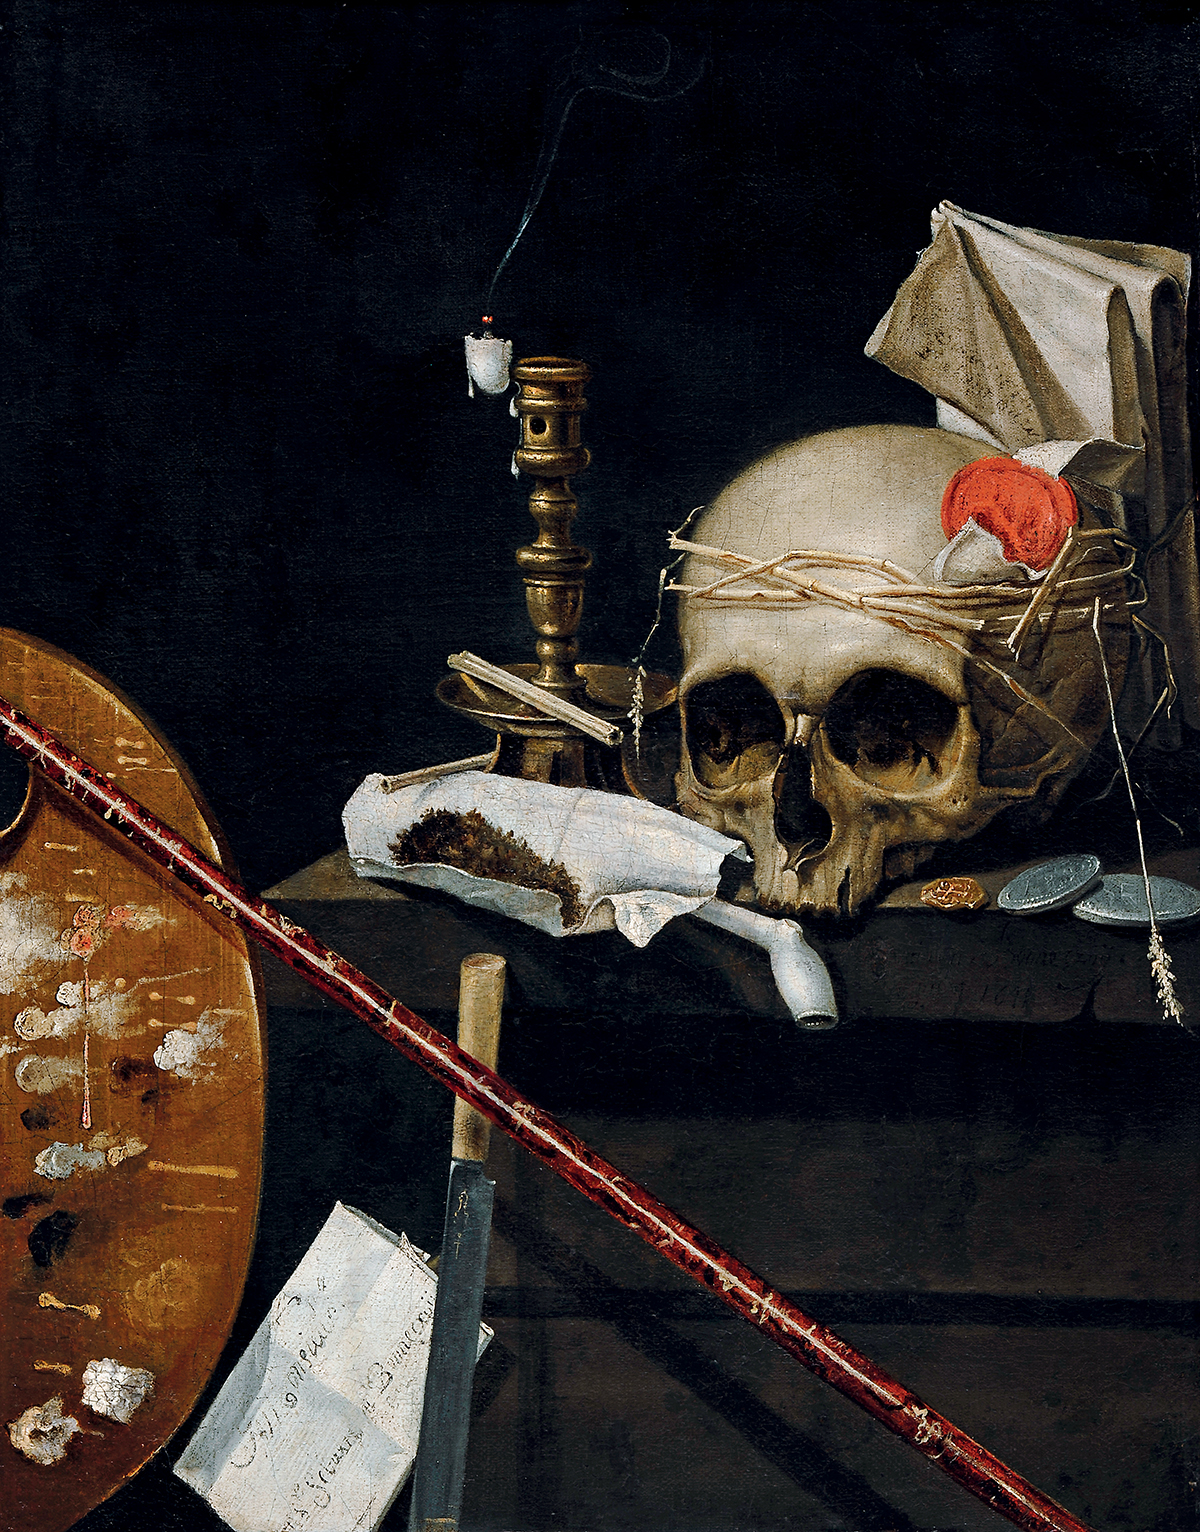  Sébastien Bonnecroy (v. 1618-1676), Vanité. Nature morte, 2e quart du XVIIe siècle. Huile sur toile, 50 x 40 cm. Strasbourg, musée des Beaux-Arts. Photo service de presse © Musées de la Ville de Strasbourg